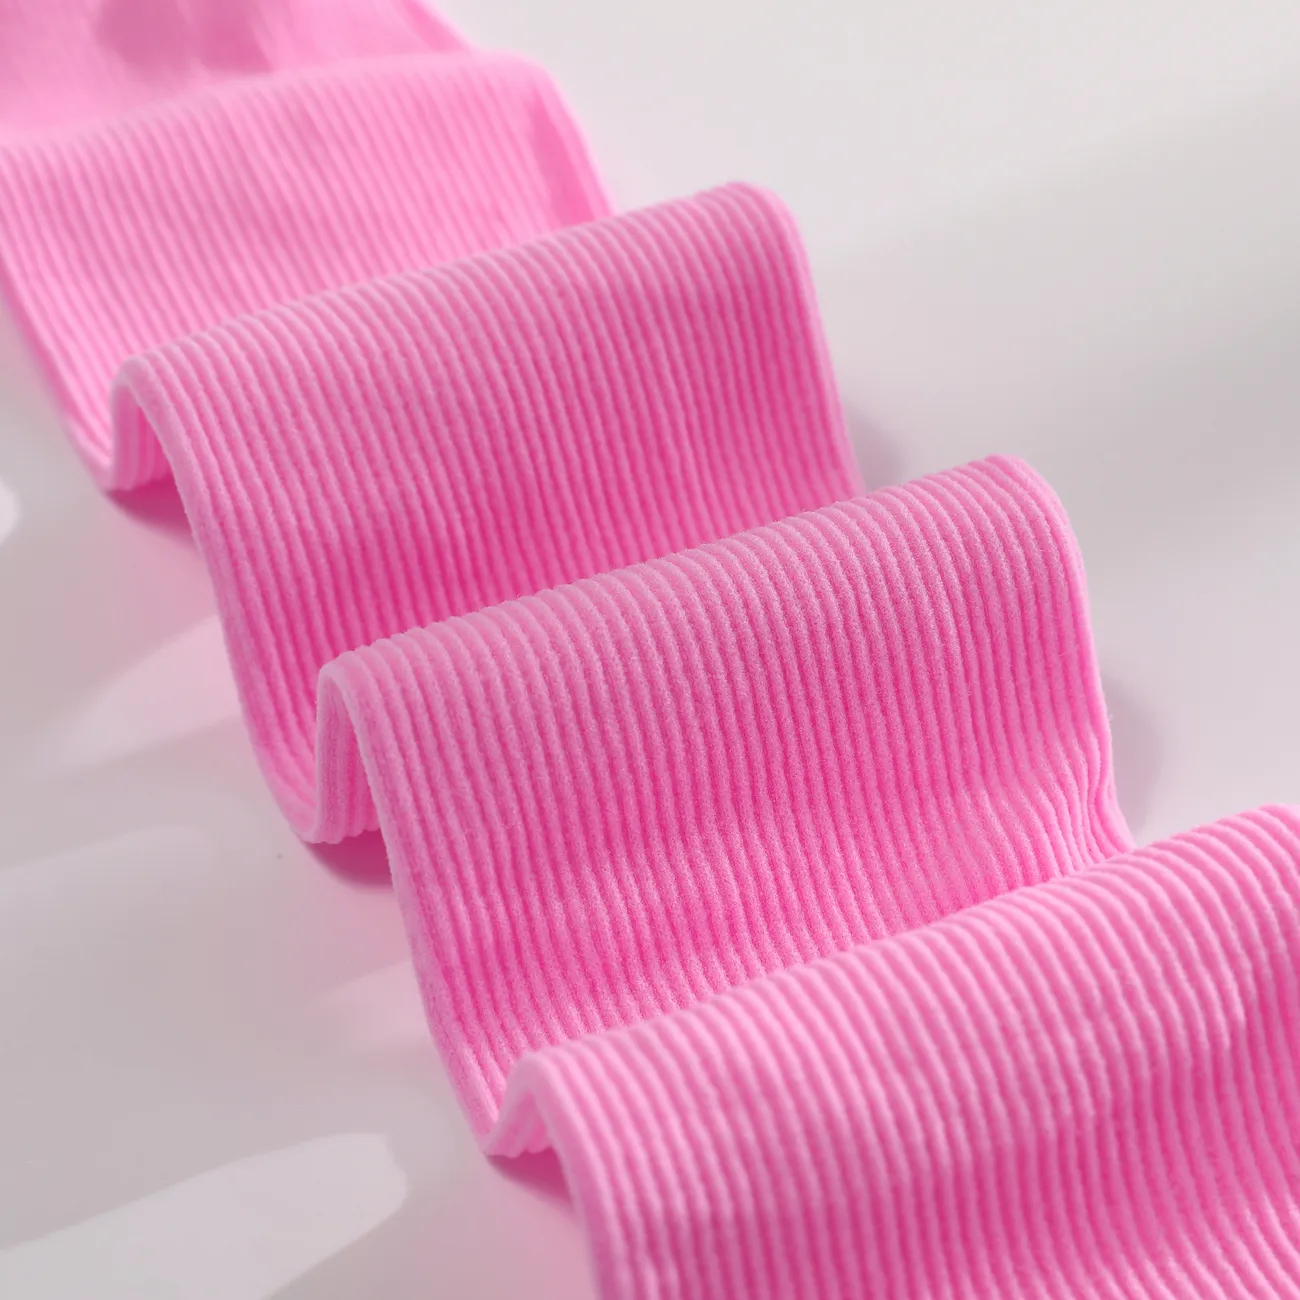 Tout-petit/enfants Fille Casual Mid-Calf Solid Pile Chaussettes dans les couleurs Candy rose-mauve big image 1